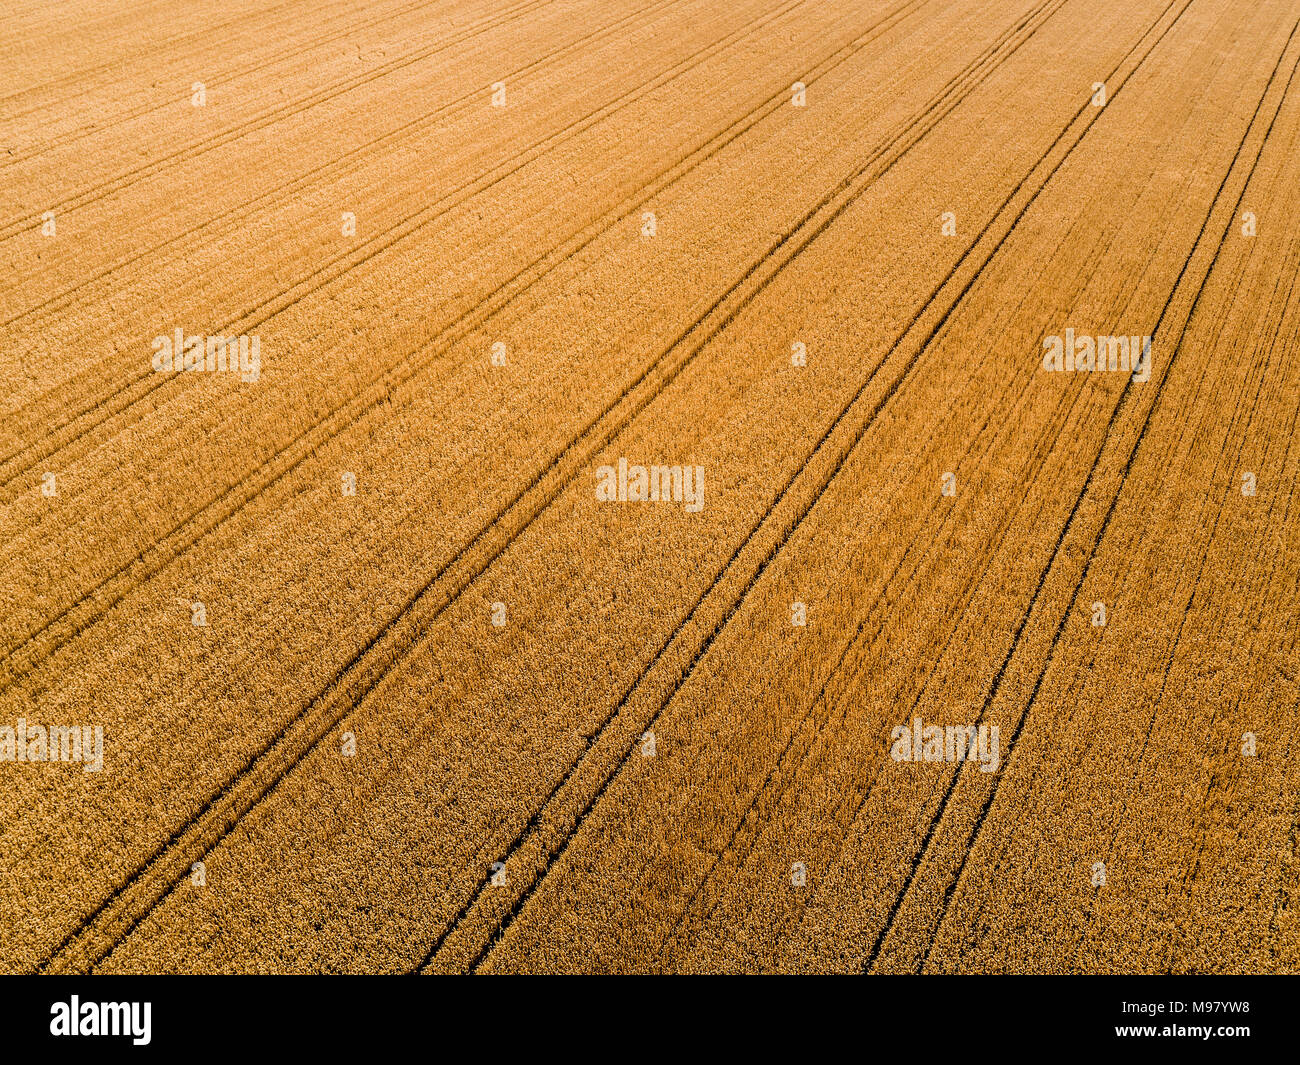 Serbia, Vojvodina, campos agrícolas, vista aérea en la temporada de verano Foto de stock